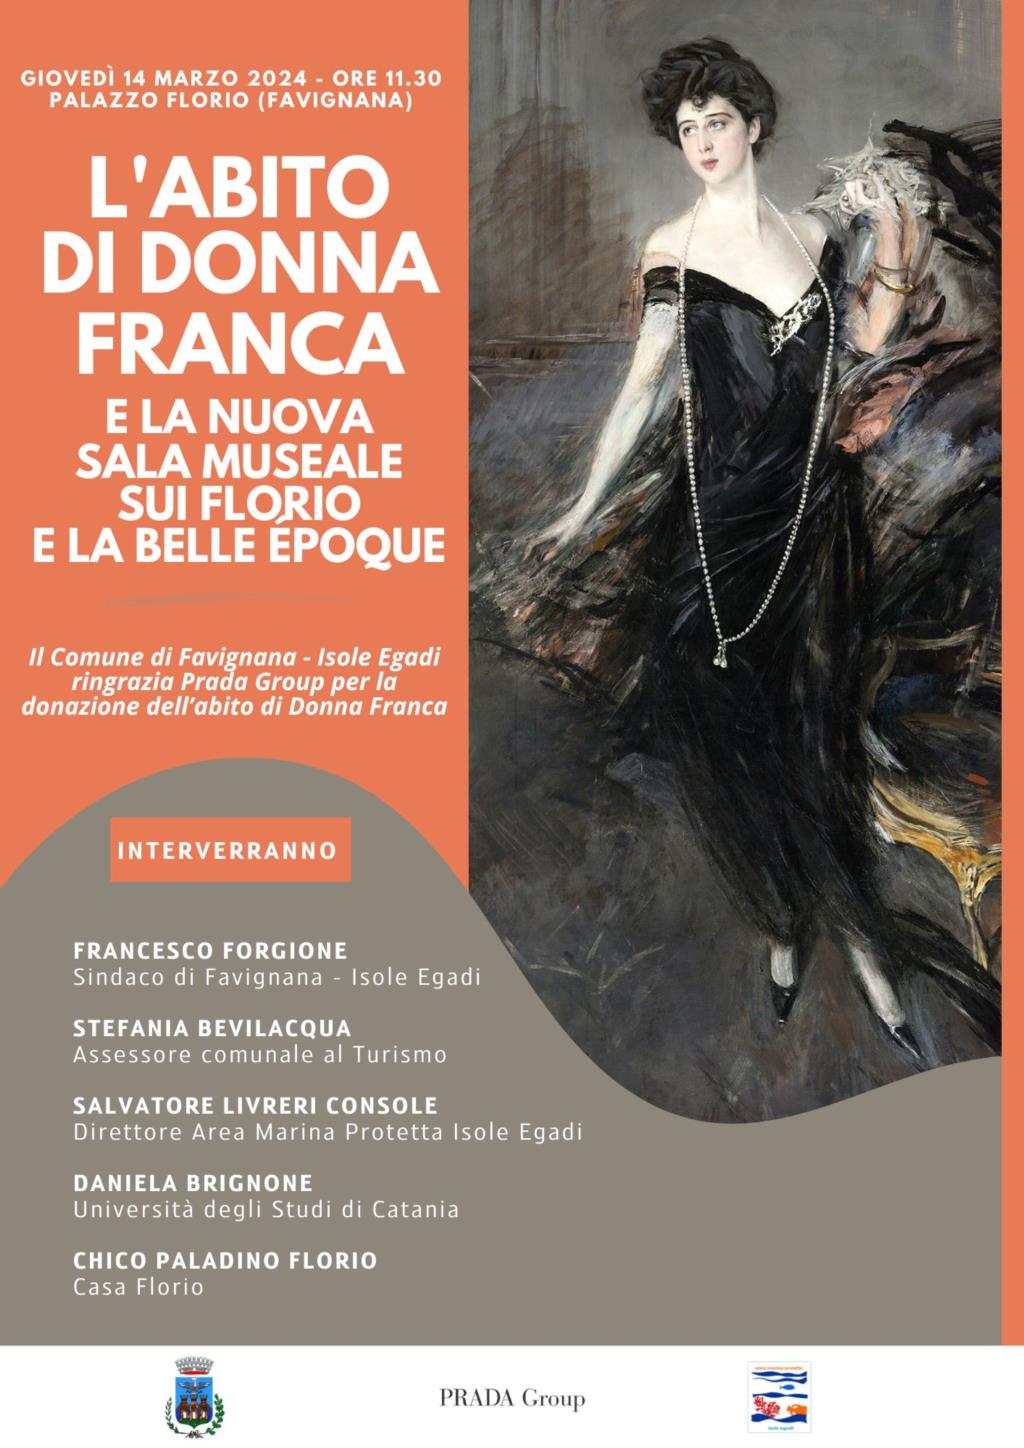 Il Comune di Favignana celebra l’eleganza di Donna Franca Florio